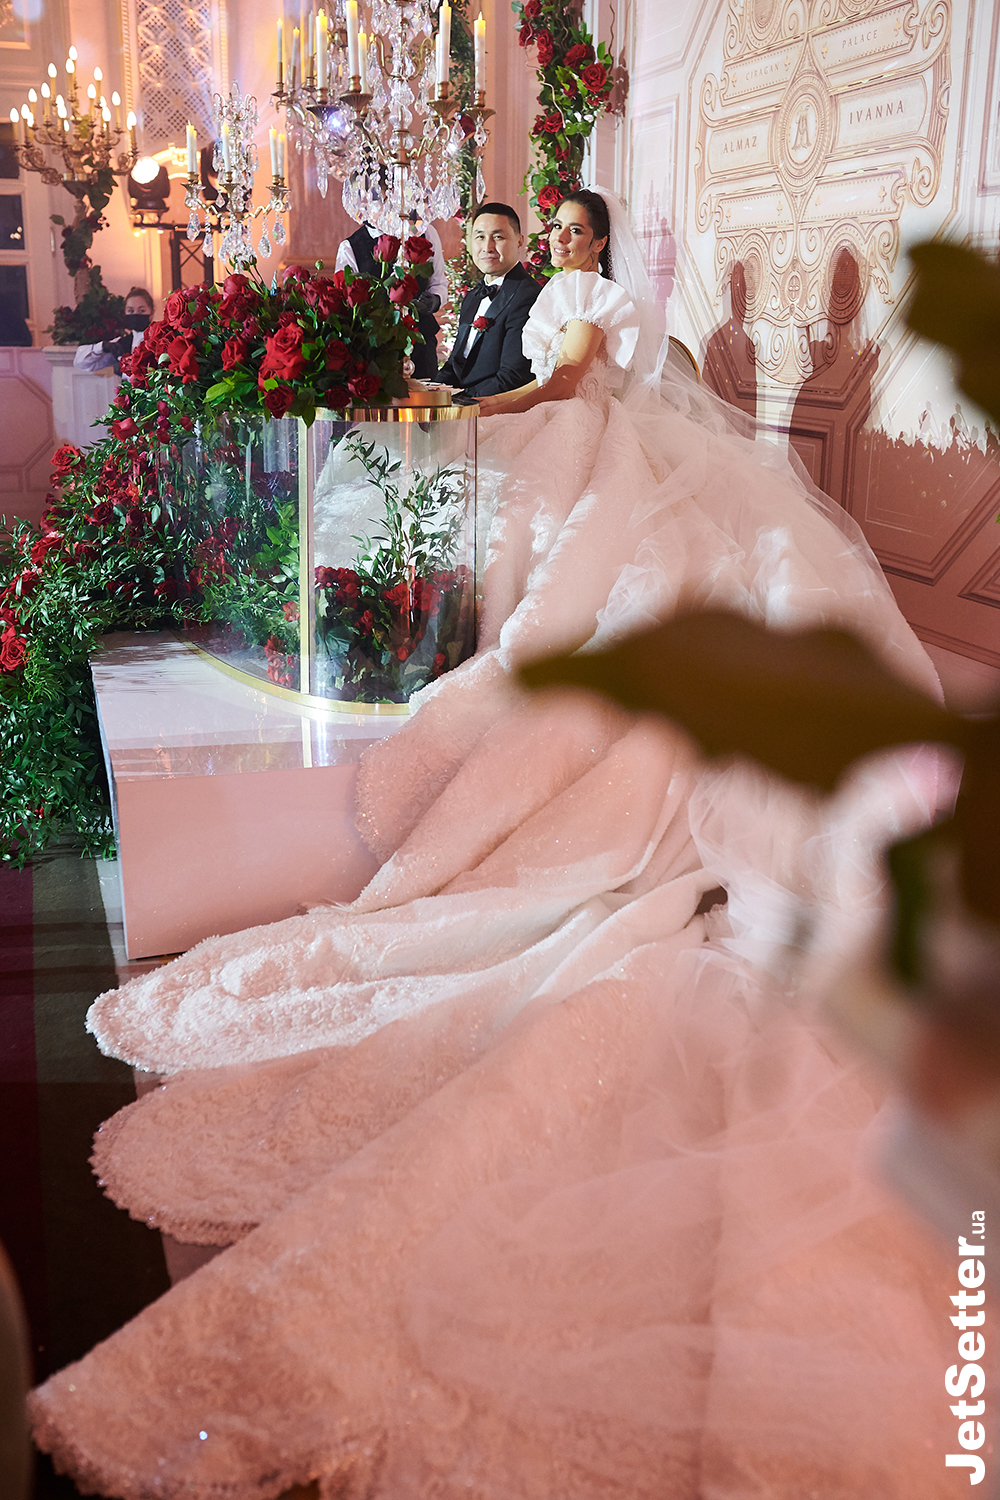 Три сукні, довжелезний шлейф і 4 кг кришталю: київське весілля Іванни Онуфрійчук та Алмаза